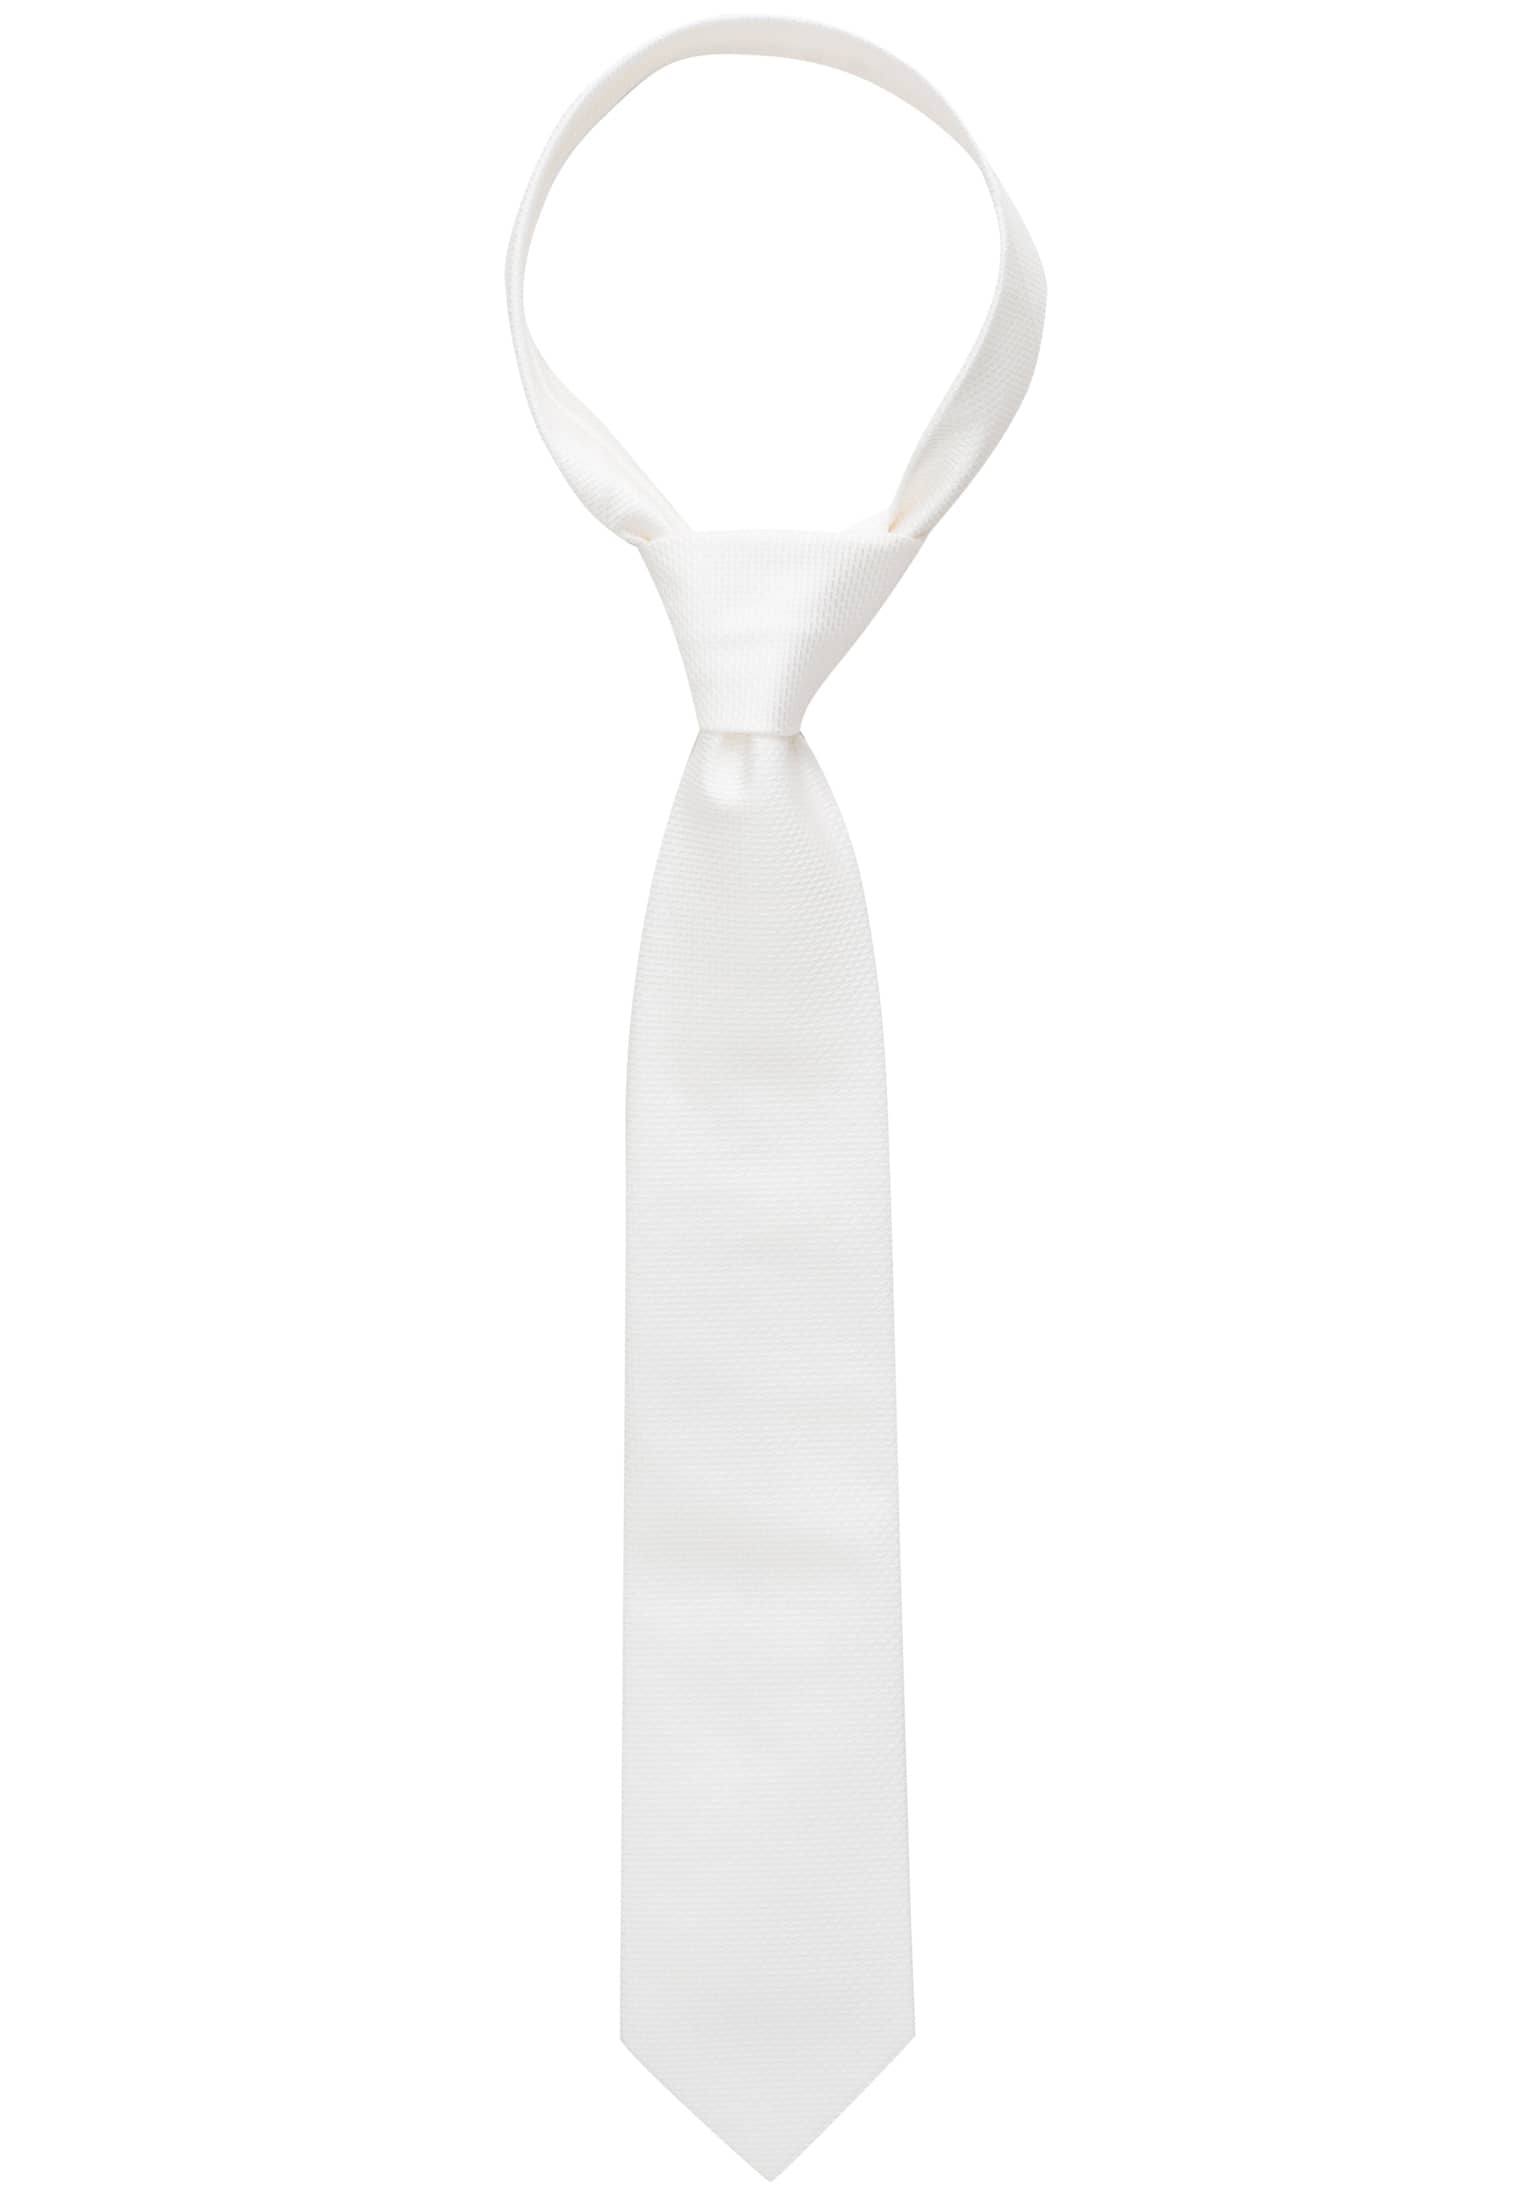 Krawatte in weiß strukturiert | weiß | 160 | 1AC01866-00-01-160 | Breite Krawatten